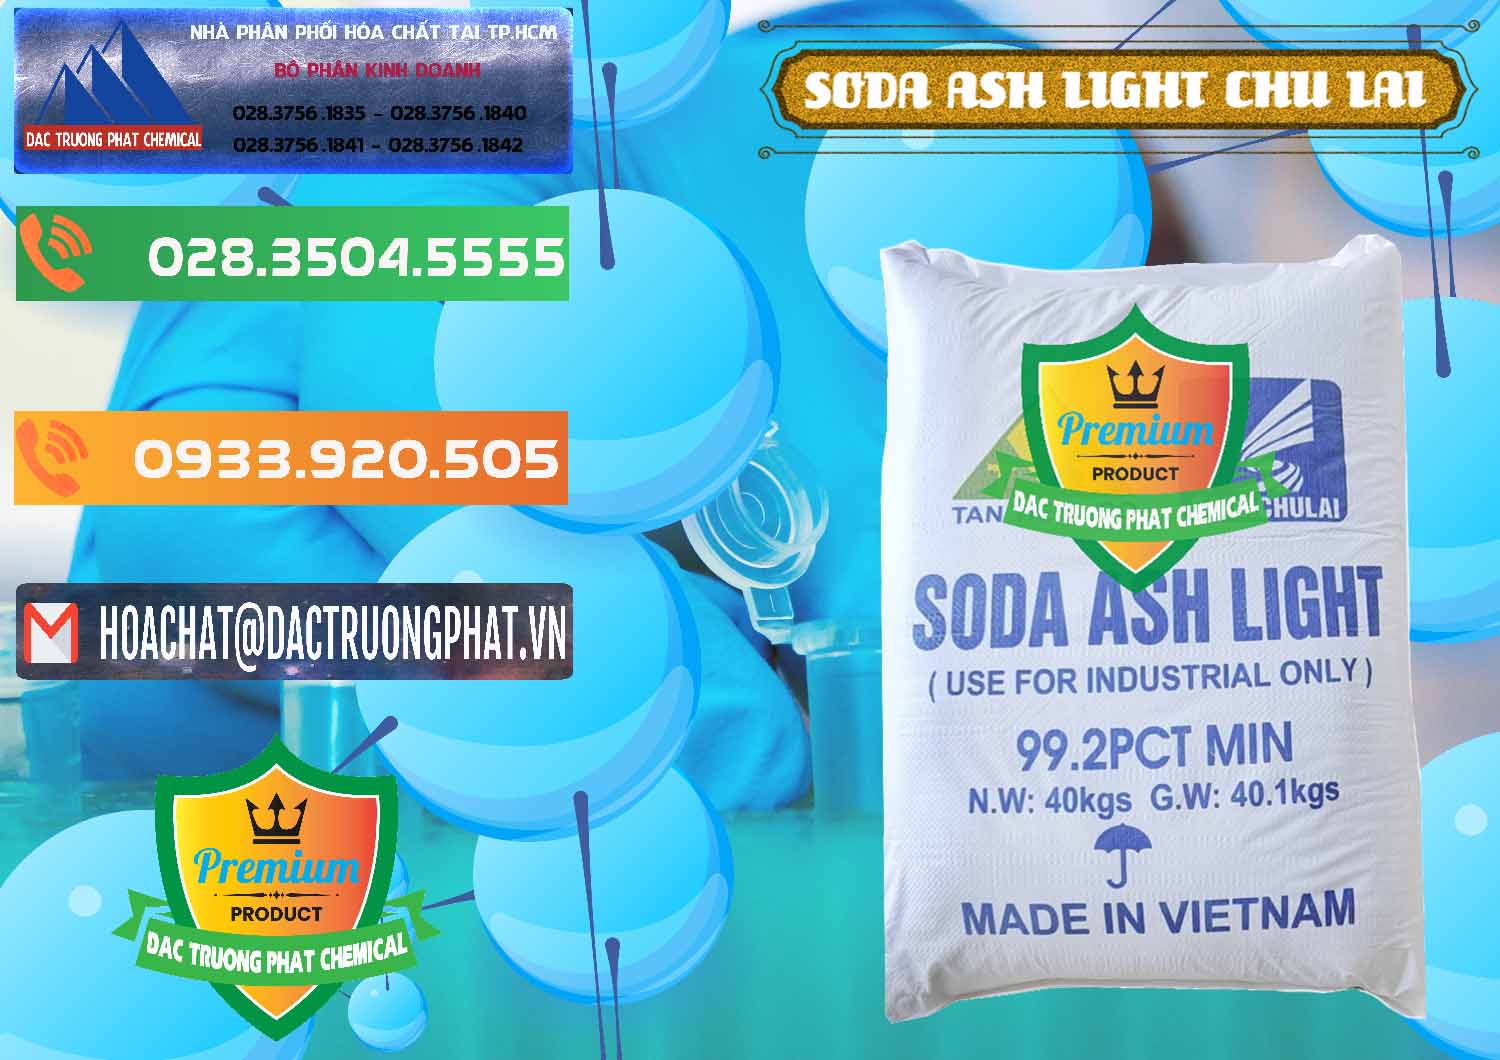 Nơi chuyên kinh doanh và cung cấp Soda Ash Light - NA2CO3 Chu Lai Việt Nam - 0489 - Cty phân phối & cung ứng hóa chất tại TP.HCM - hoachatxulynuoc.com.vn